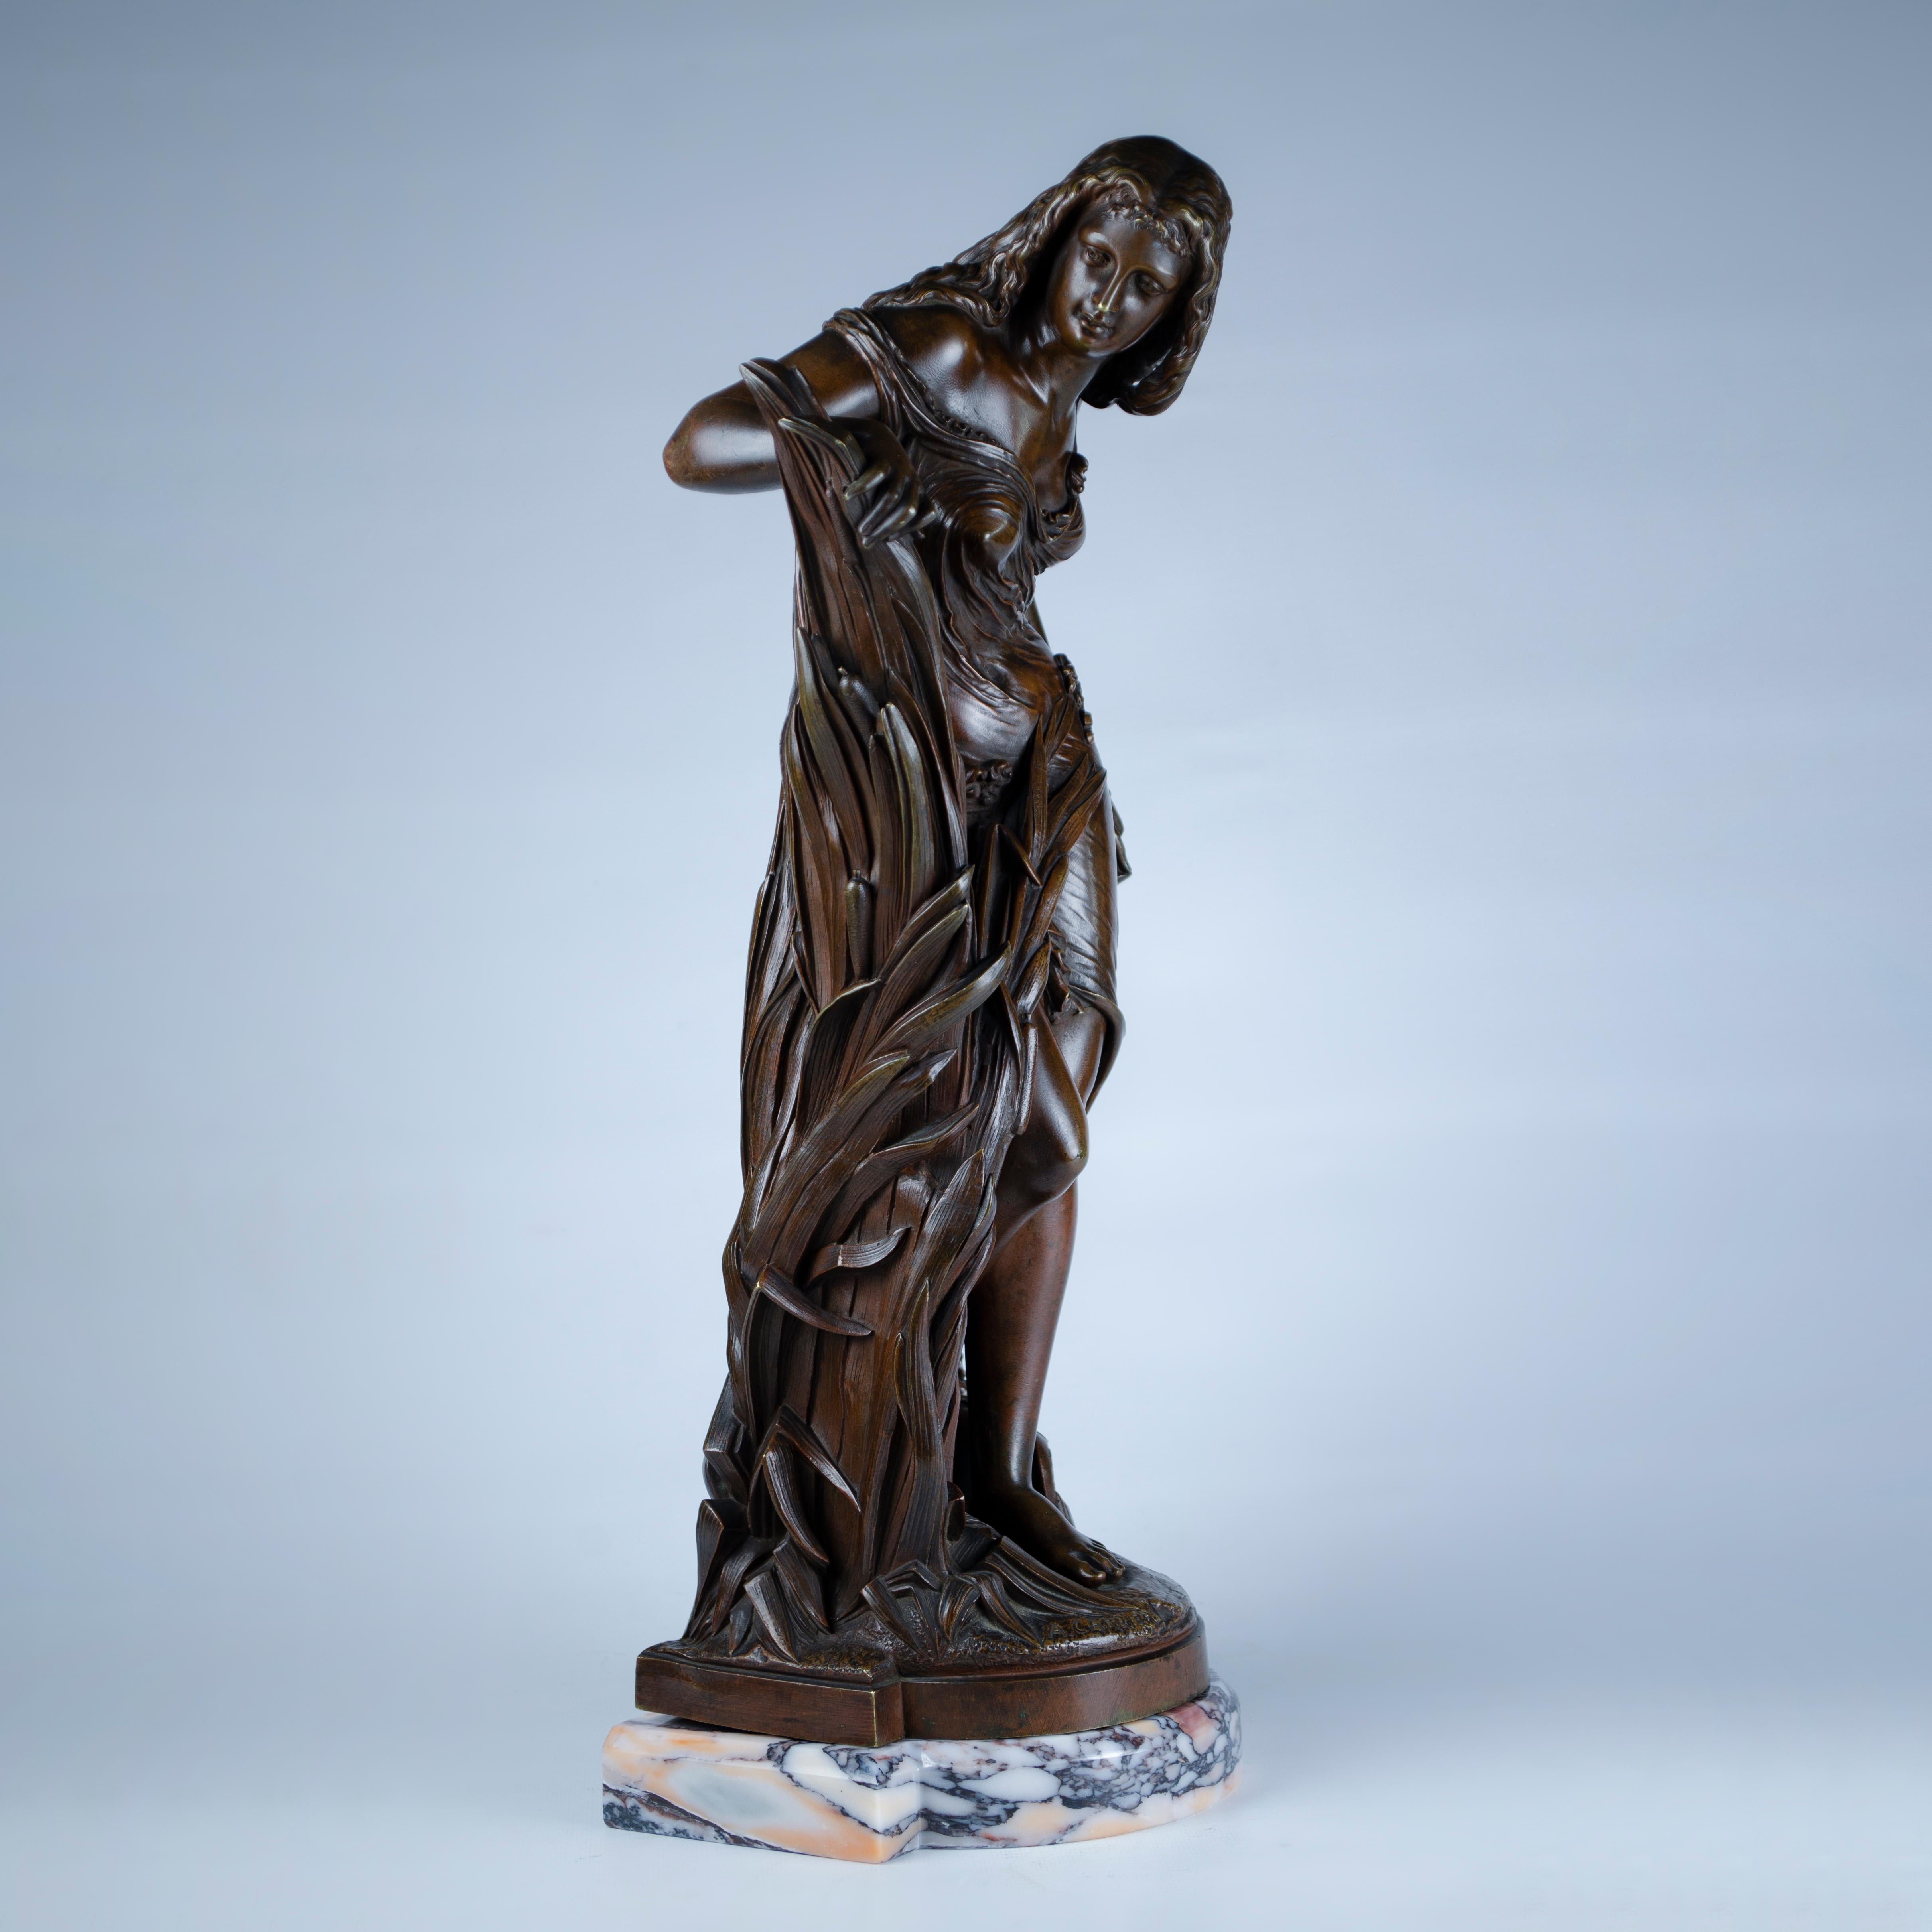 Sehr fein ziselierte Bronzeguss-Skulptur, die eine schöne nackte Nymphe darstellt, die aus dem hohen Schilf am Rande eines Baches auftaucht. Zu ihren Füßen steht ein Wasserkrug mit einem Marmorsockel. Hergestellt von Albert-Ernest Carrier-Belleuse,